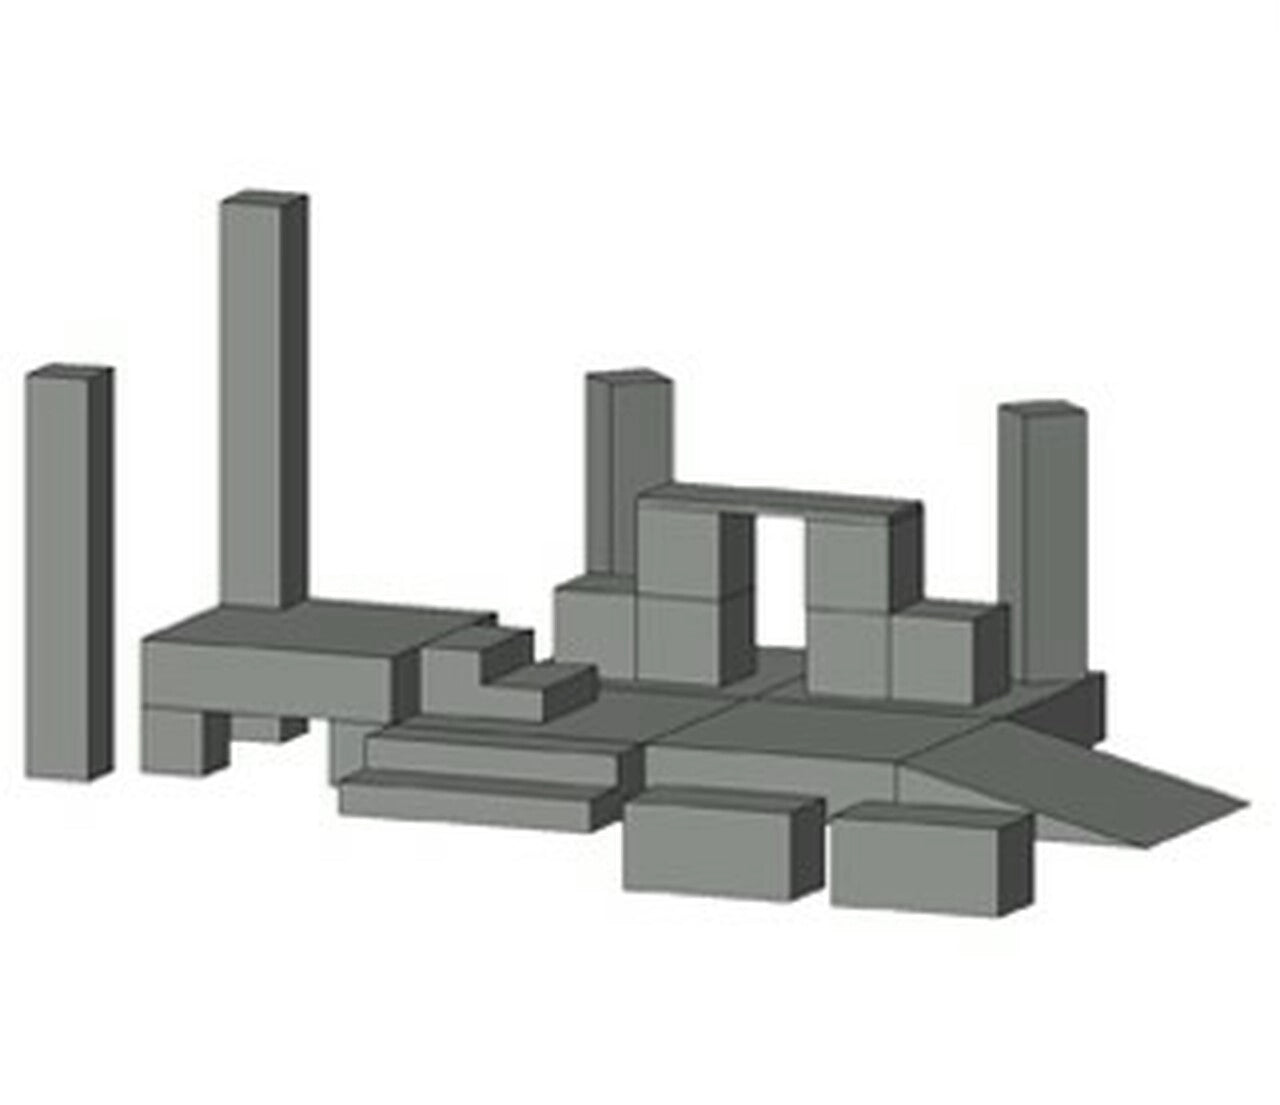 Table Top Scenic Design: Junior Modular set (planificación y diseño de escenarios)